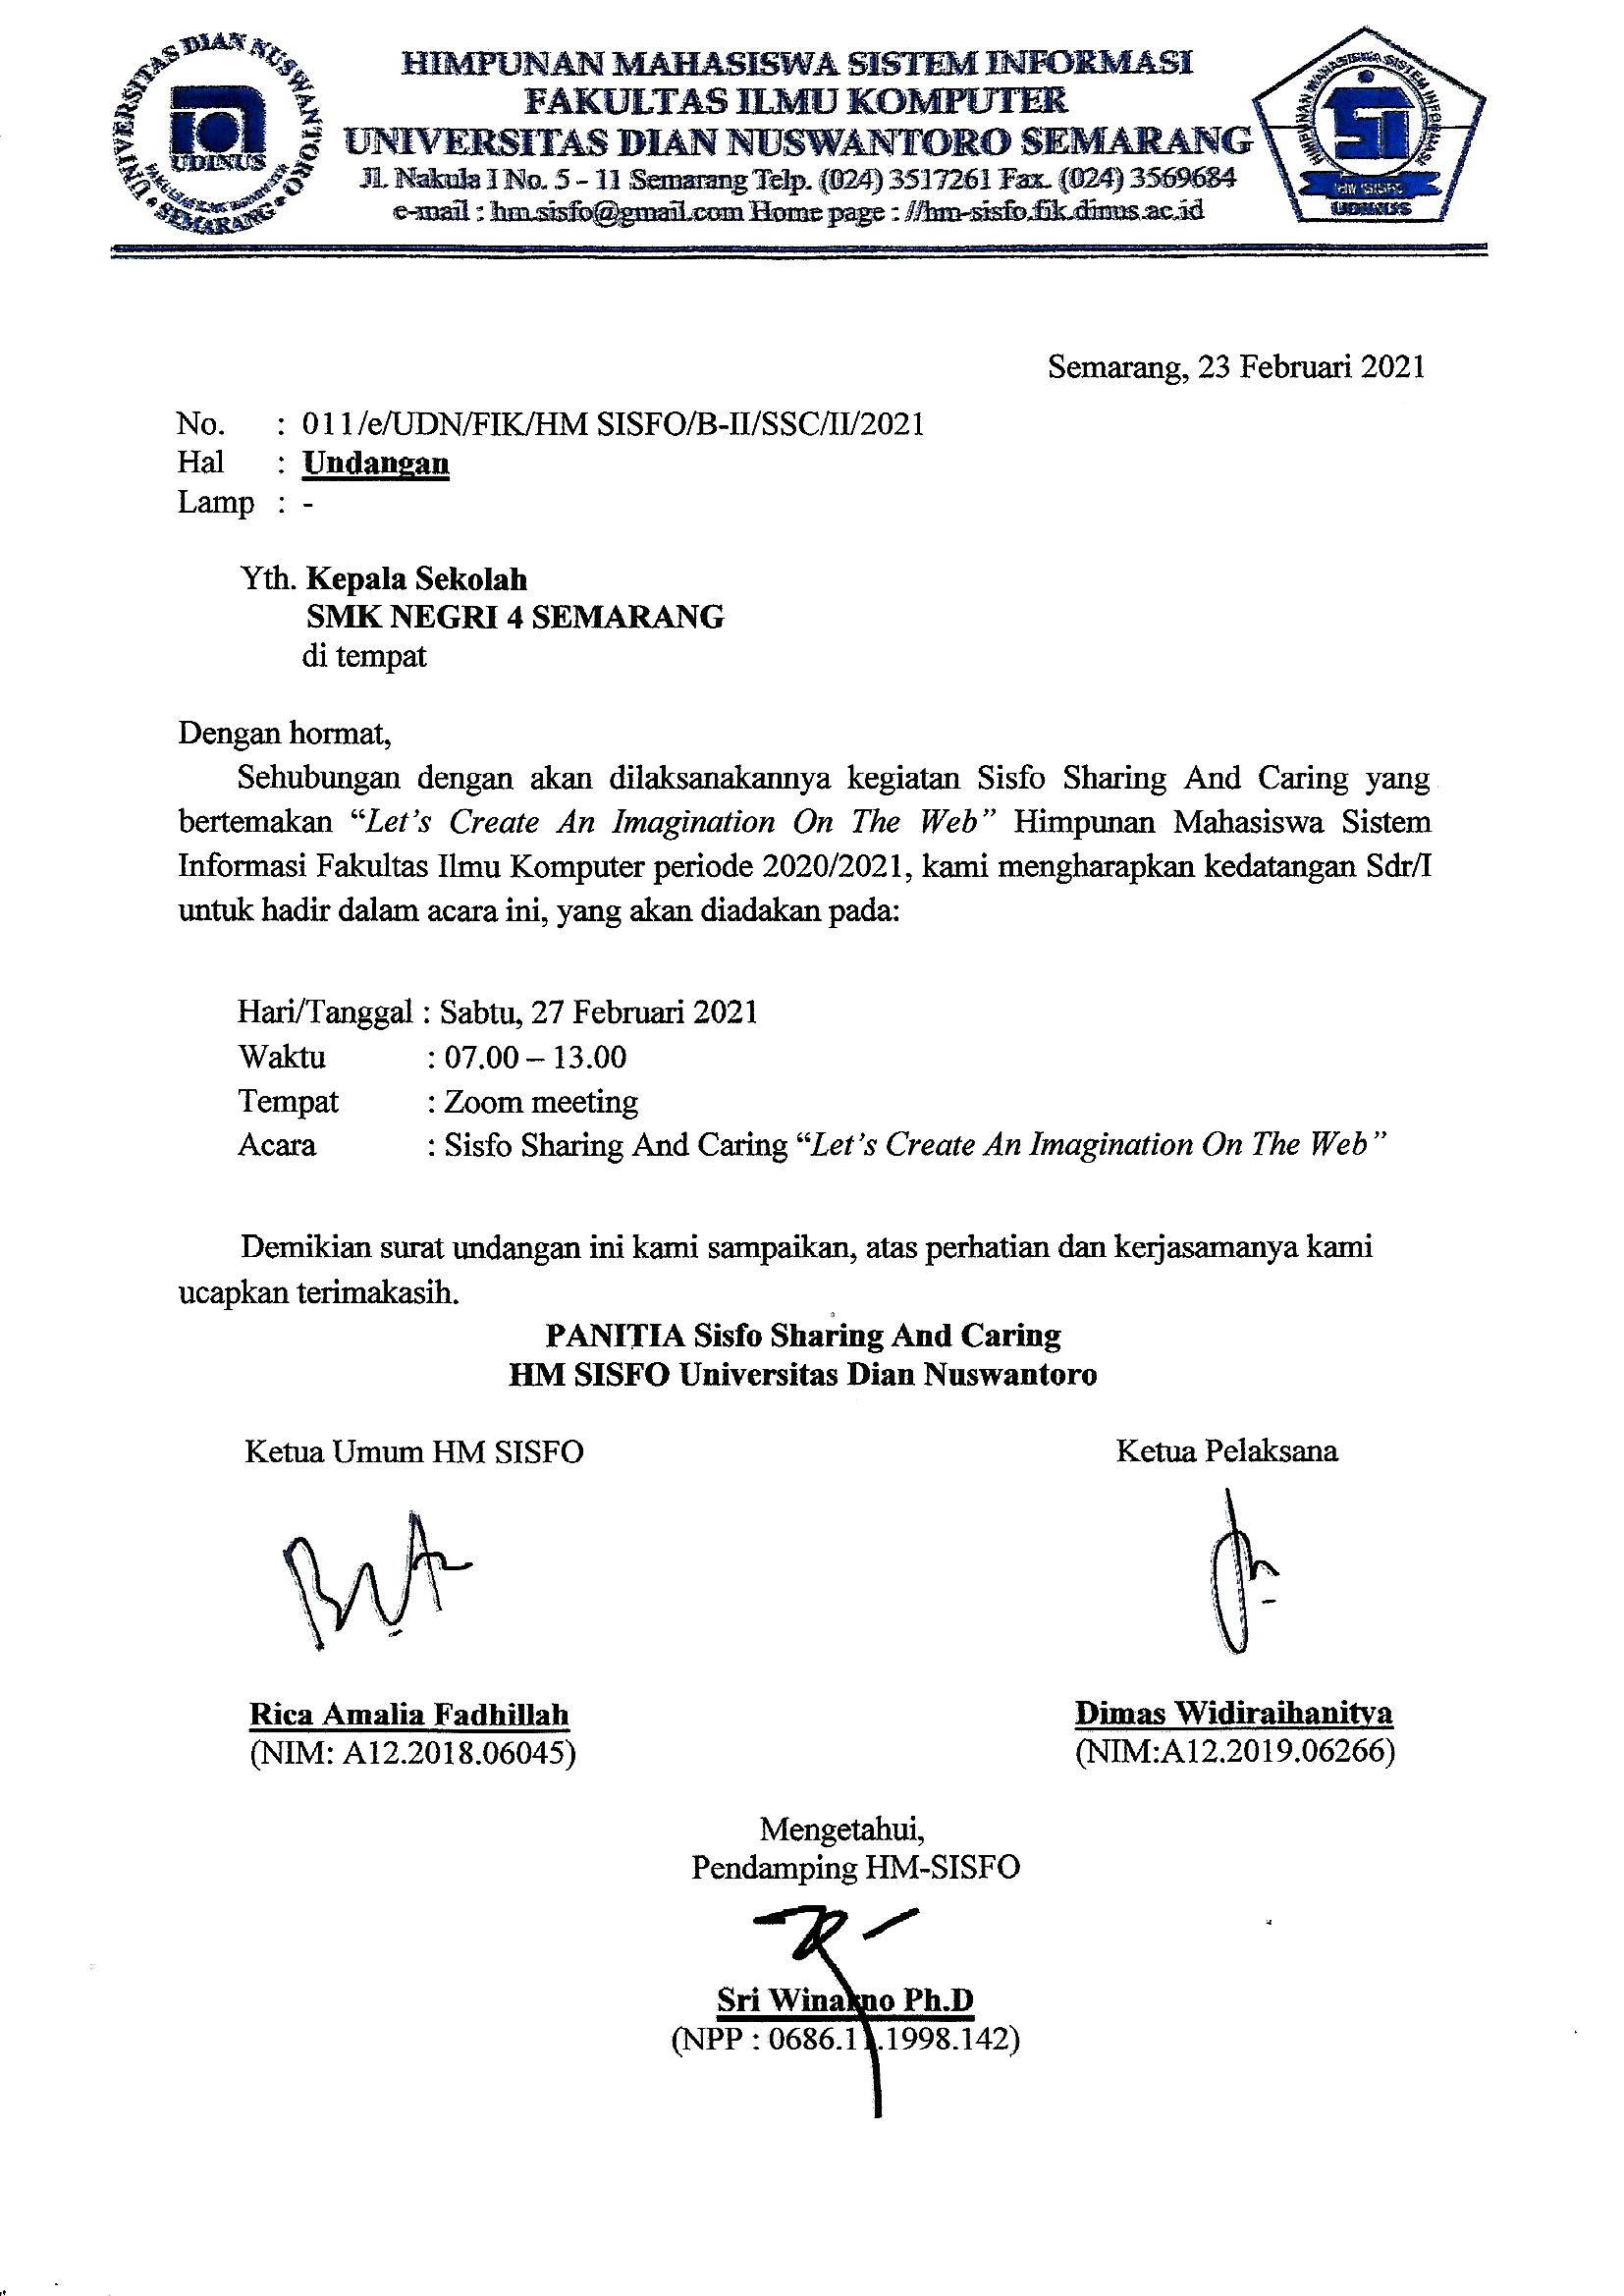 Surat Undangan Sambutan Kepala Sekolah SMKN4 Semarang